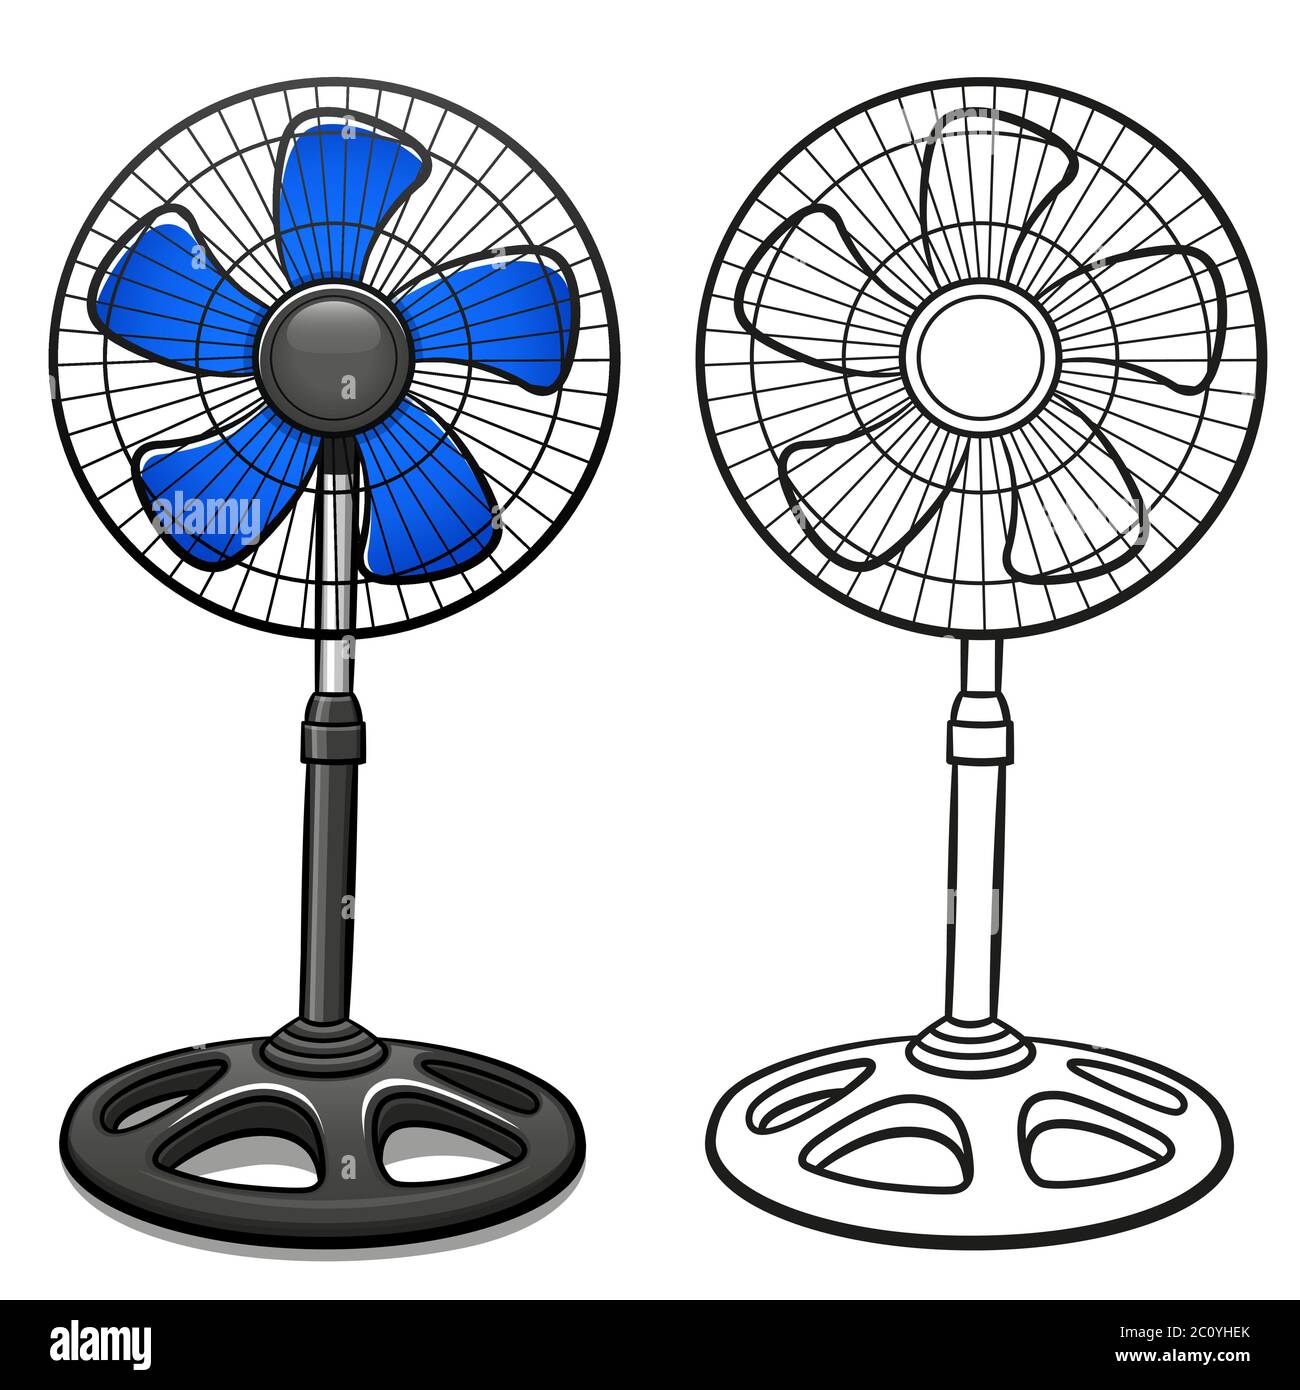 Illustrazione vettoriale del cartone animato isolato del ventilatore a piedistallo Illustrazione Vettoriale